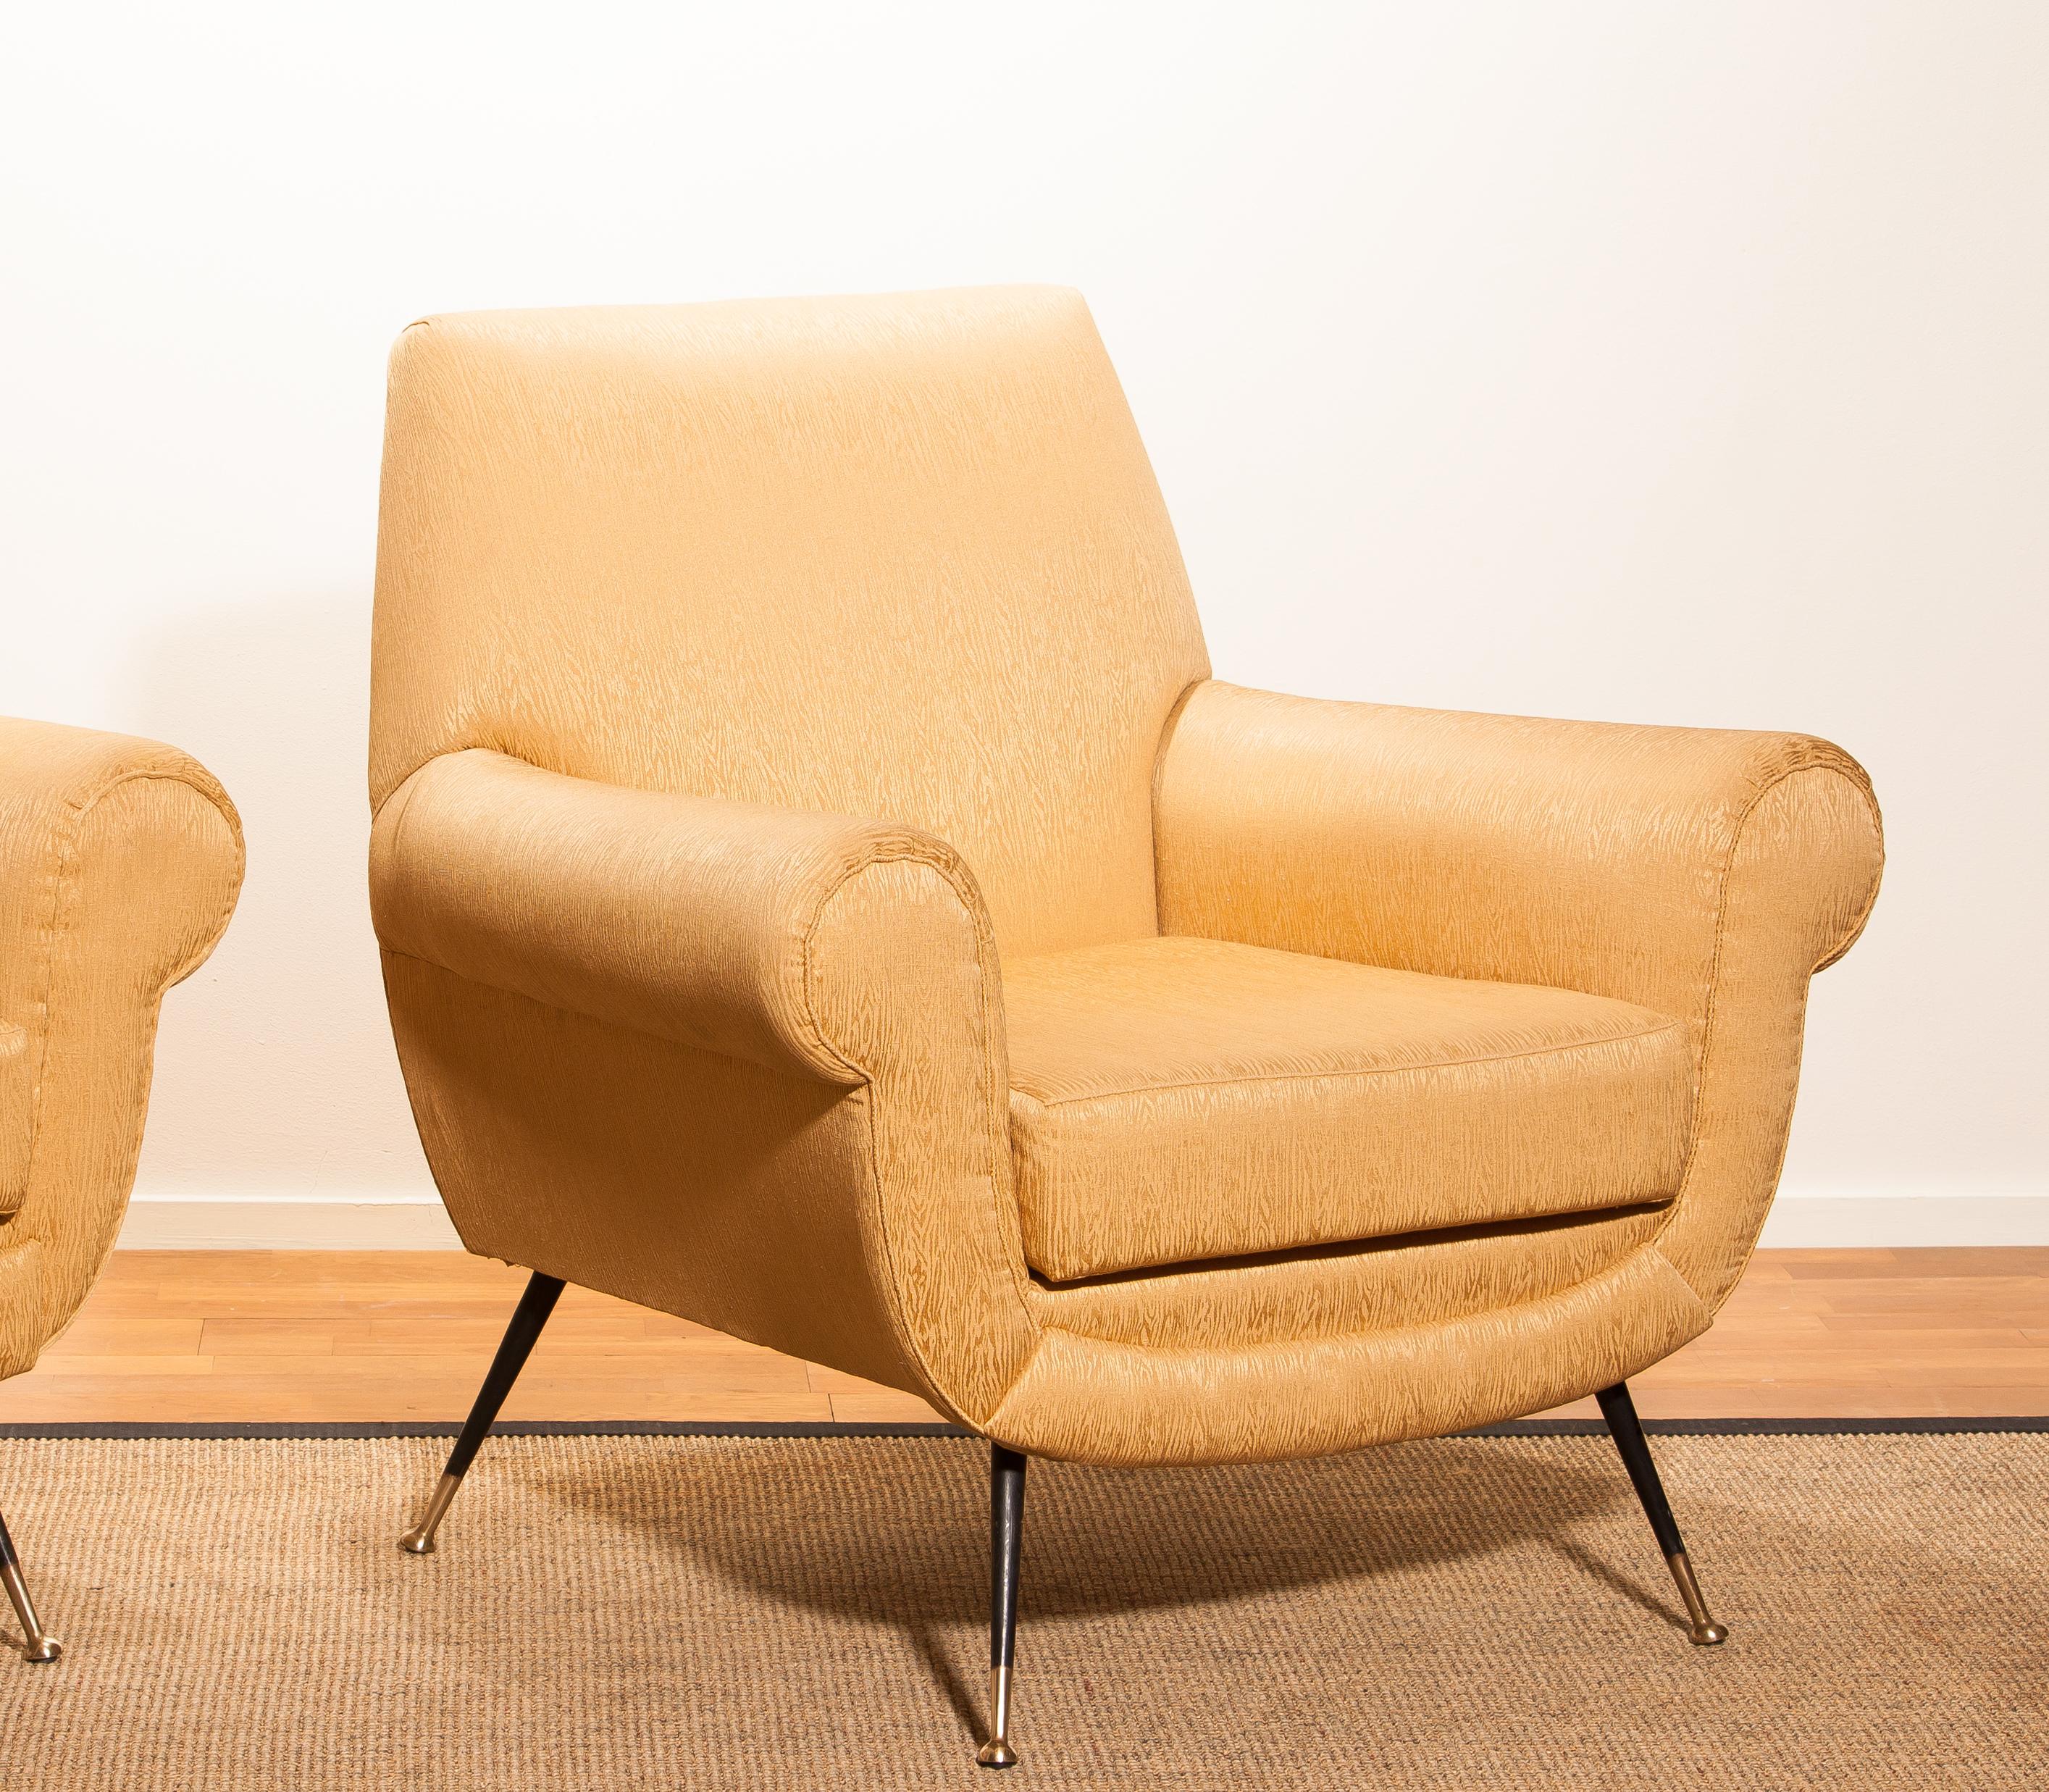 Golden Jacquard Upholstered Easy Chairs by Gigi Radice for Minotti, Brass Legs 6